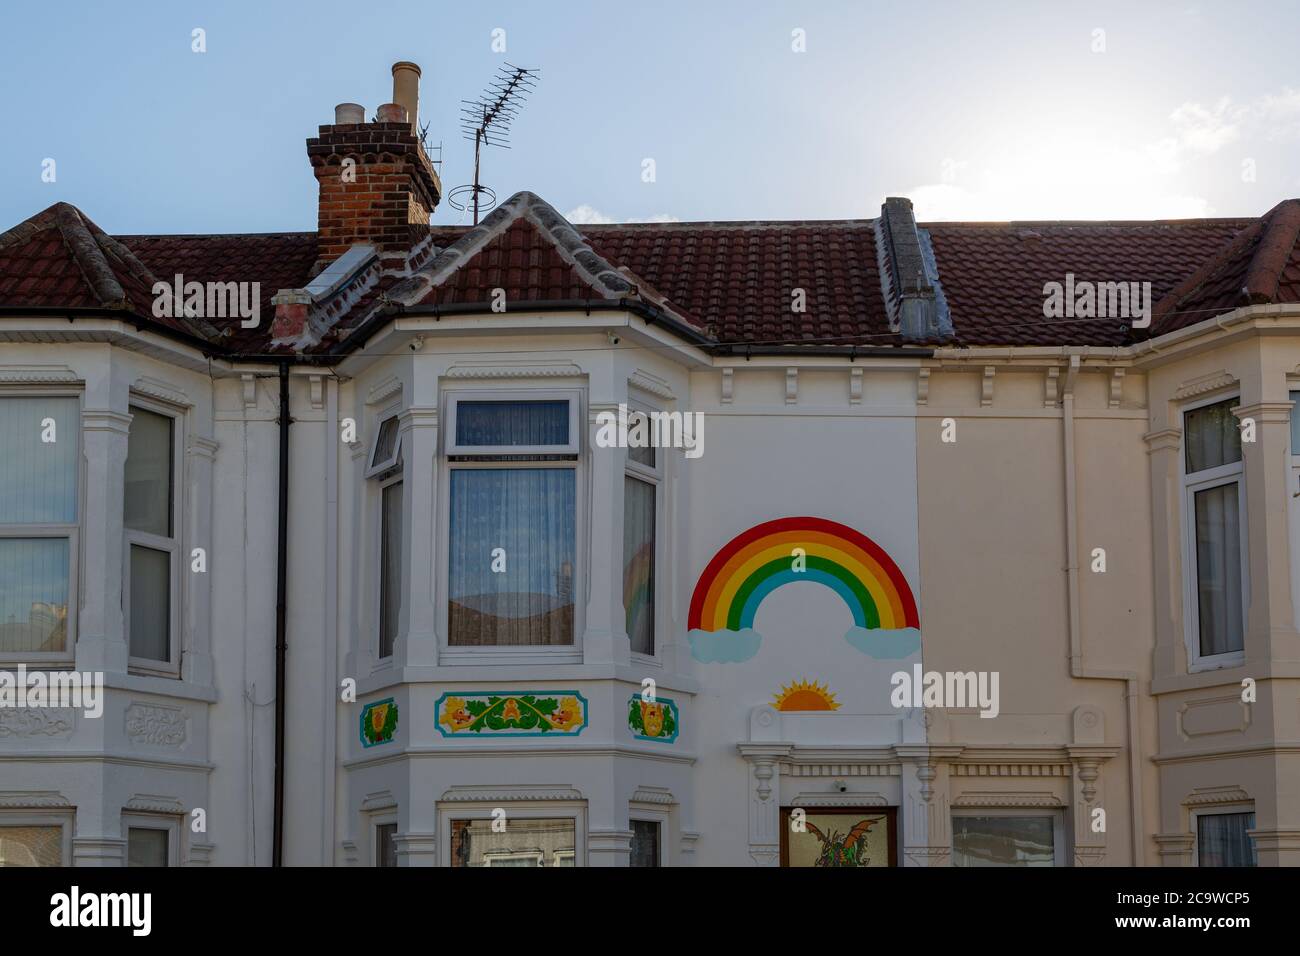 El frente de una casa inglesa pintada con un arco iris durante el brote de Covid-19 o coronavirus Foto de stock